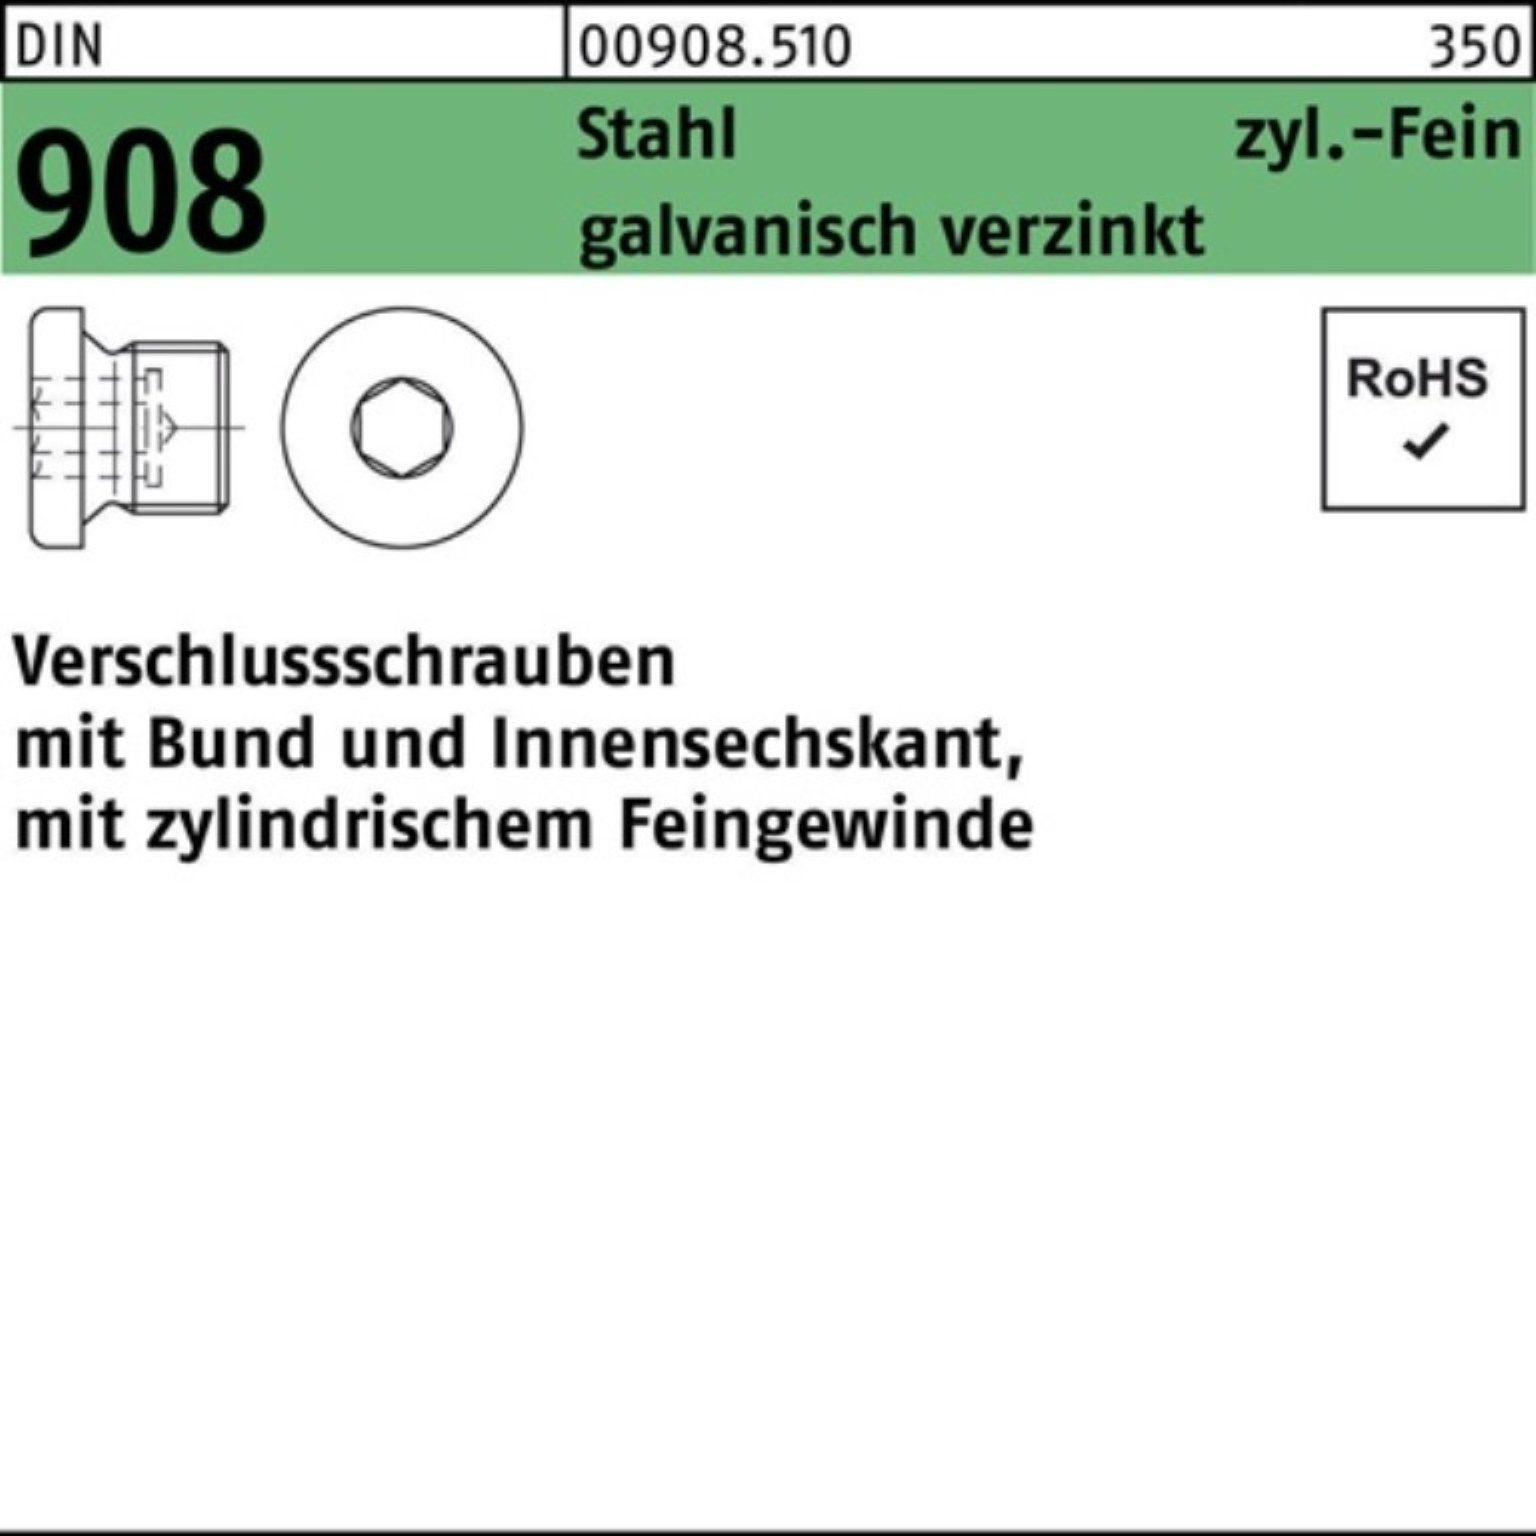 Reyher Schraube 100er Pack Verschlußschraube Bund/Innen-6kt galv.v Stahl 908 M8x1 DIN